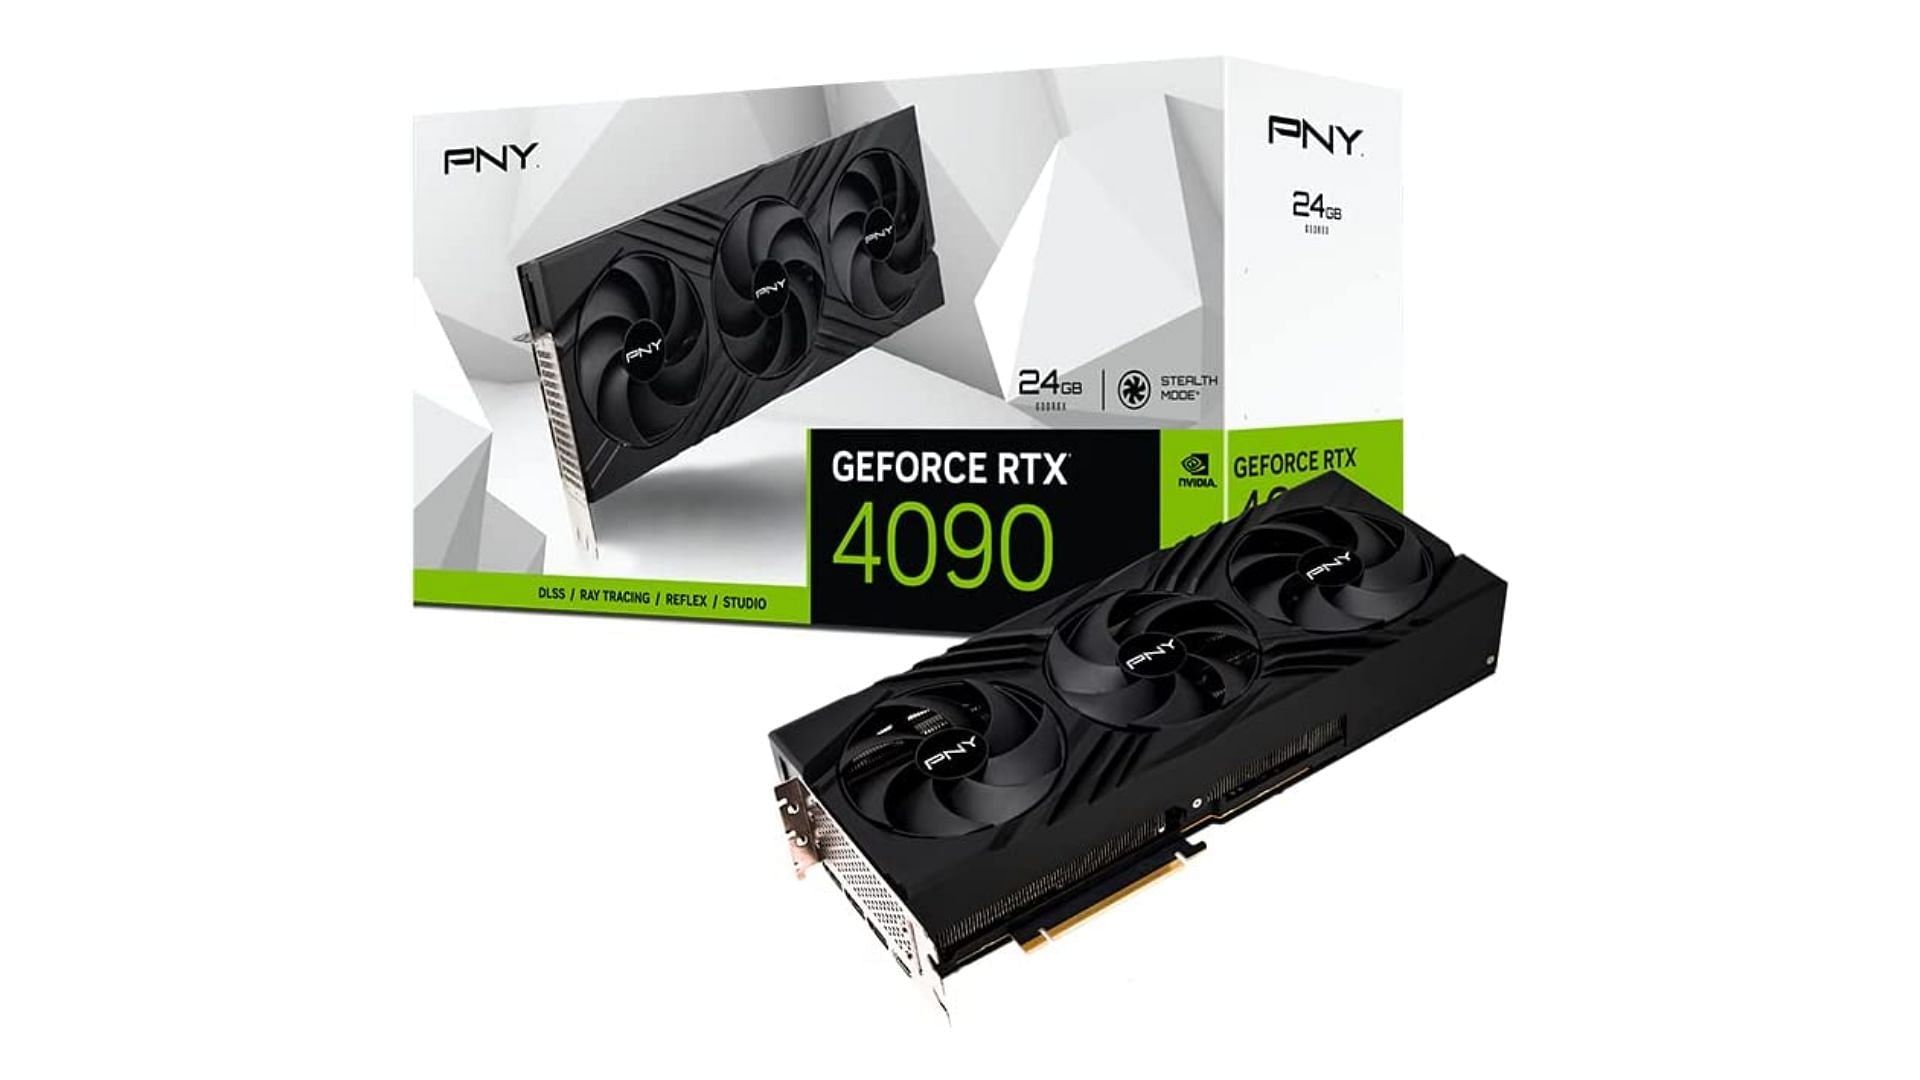 The PNY GeForce RTX 4090 Verto (Image via Amazon)